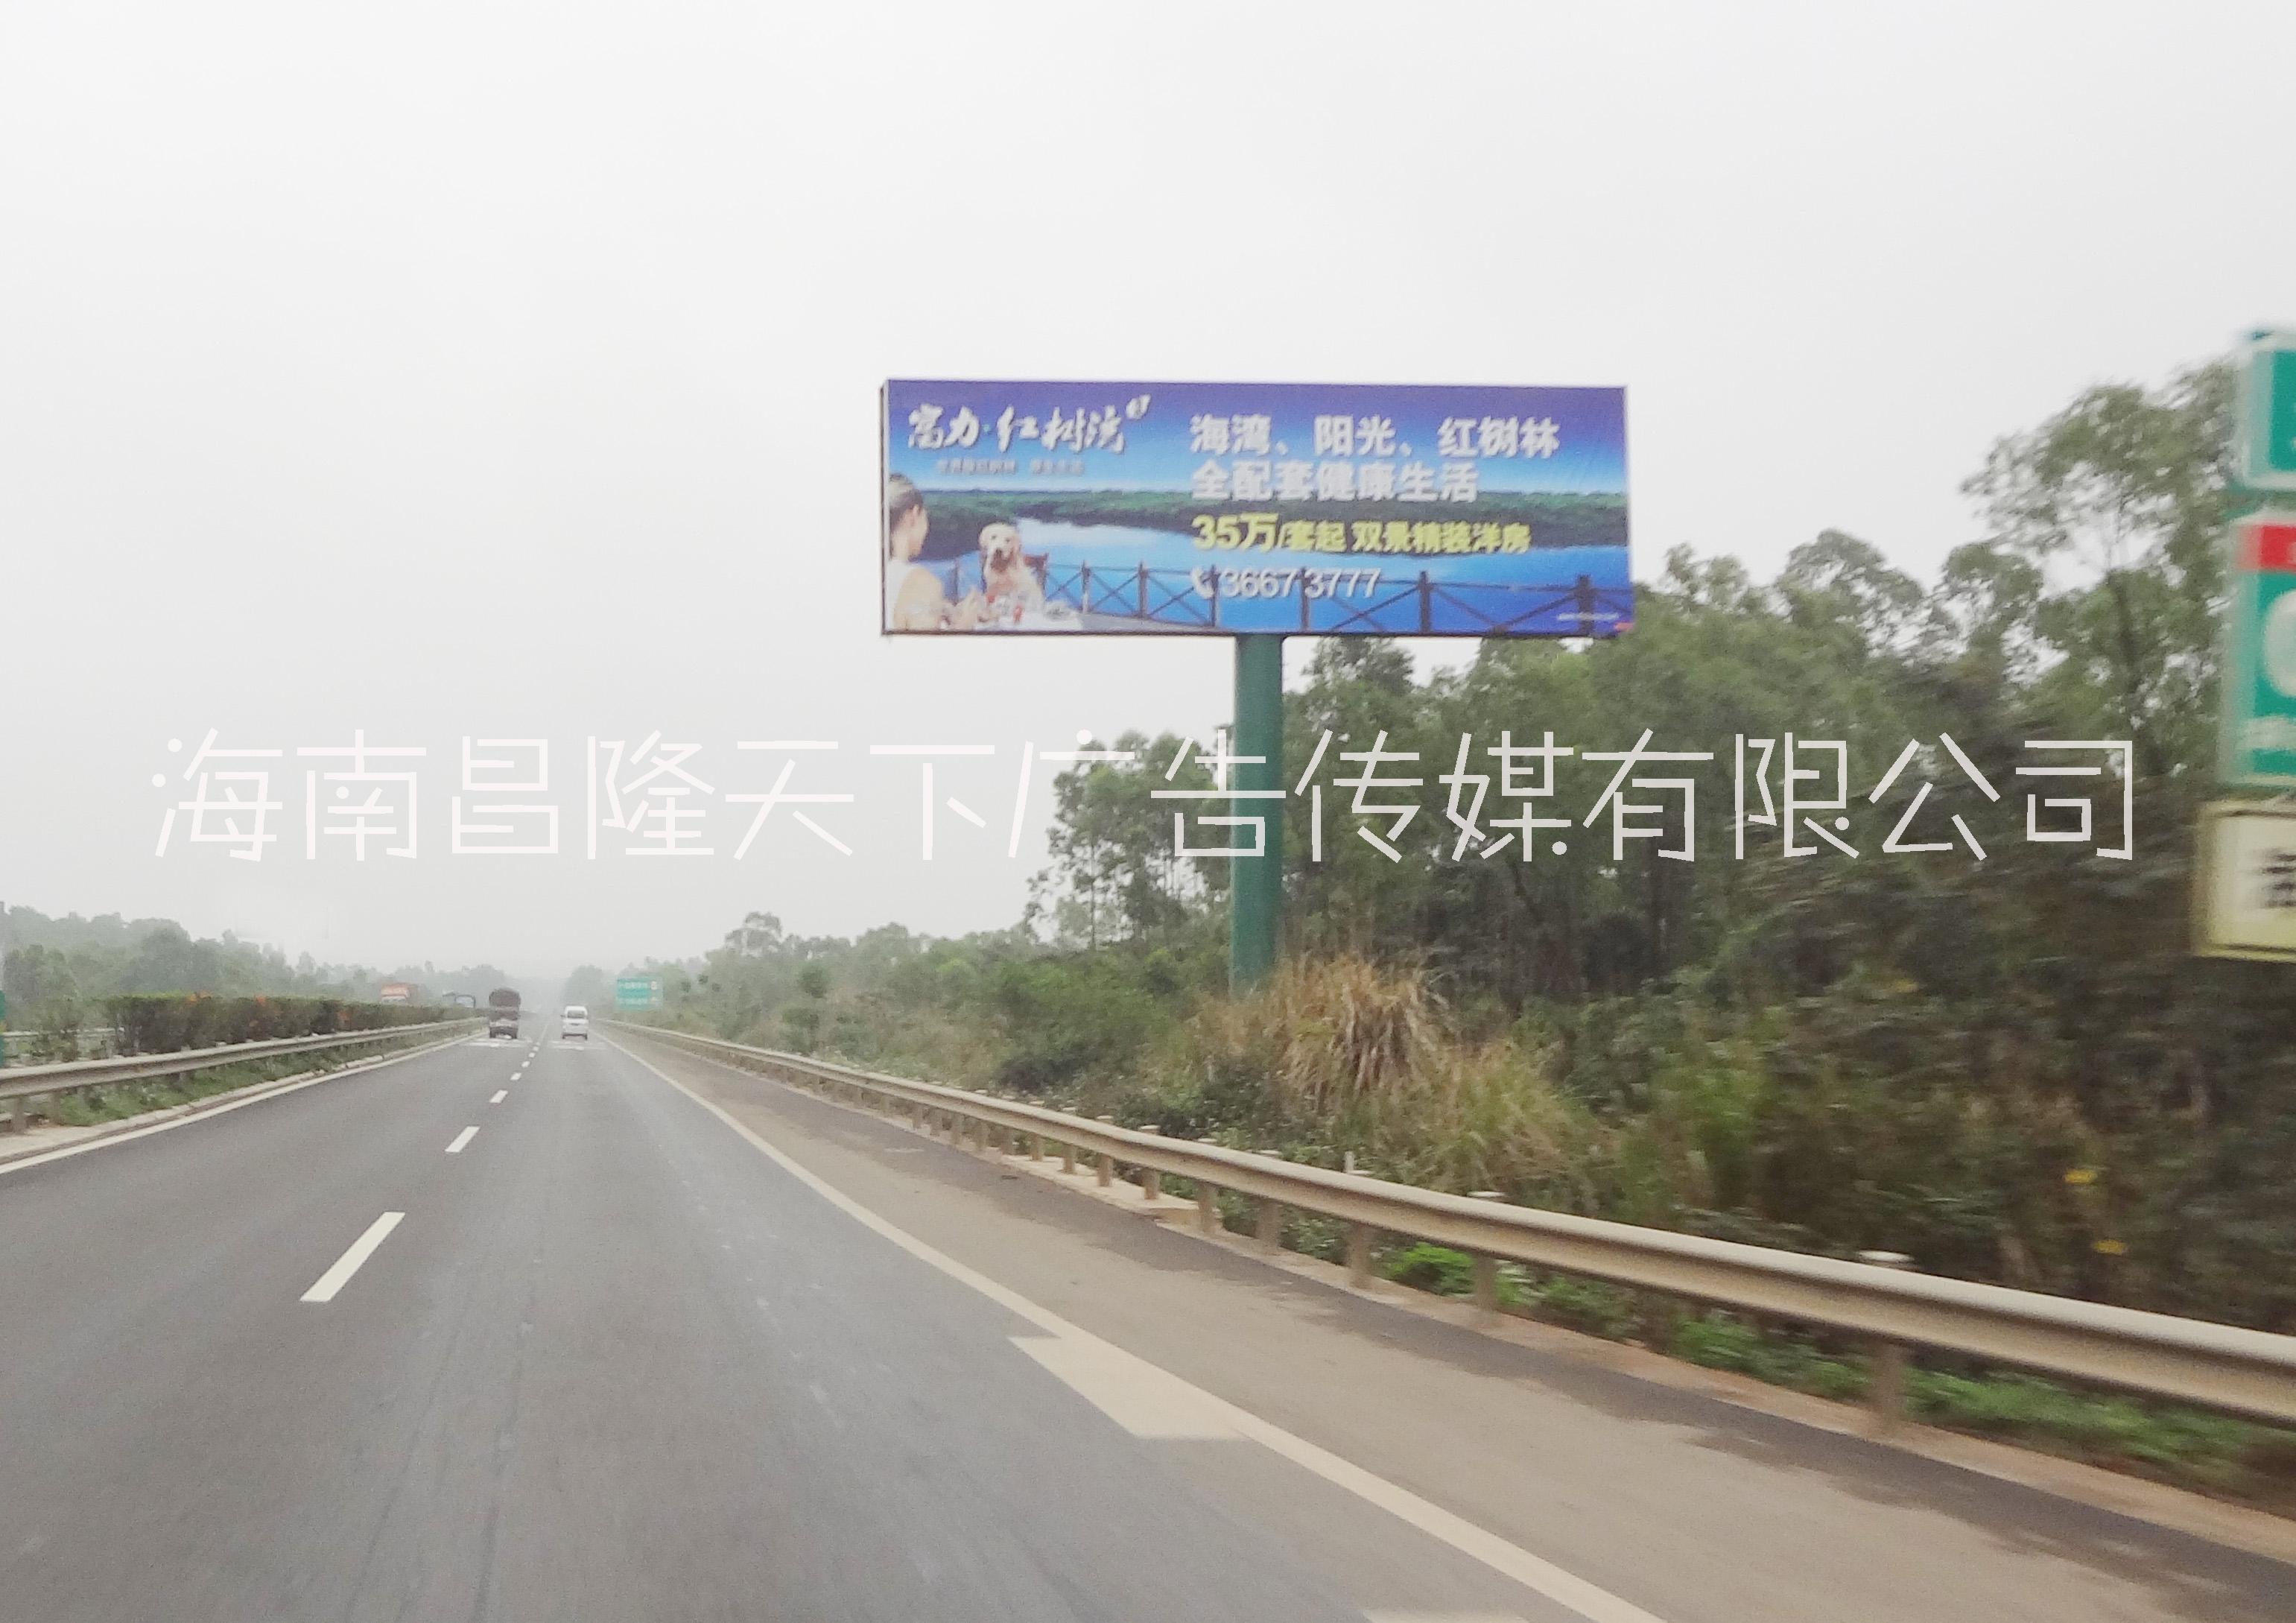 海南G98环岛高速公路广告牌图片